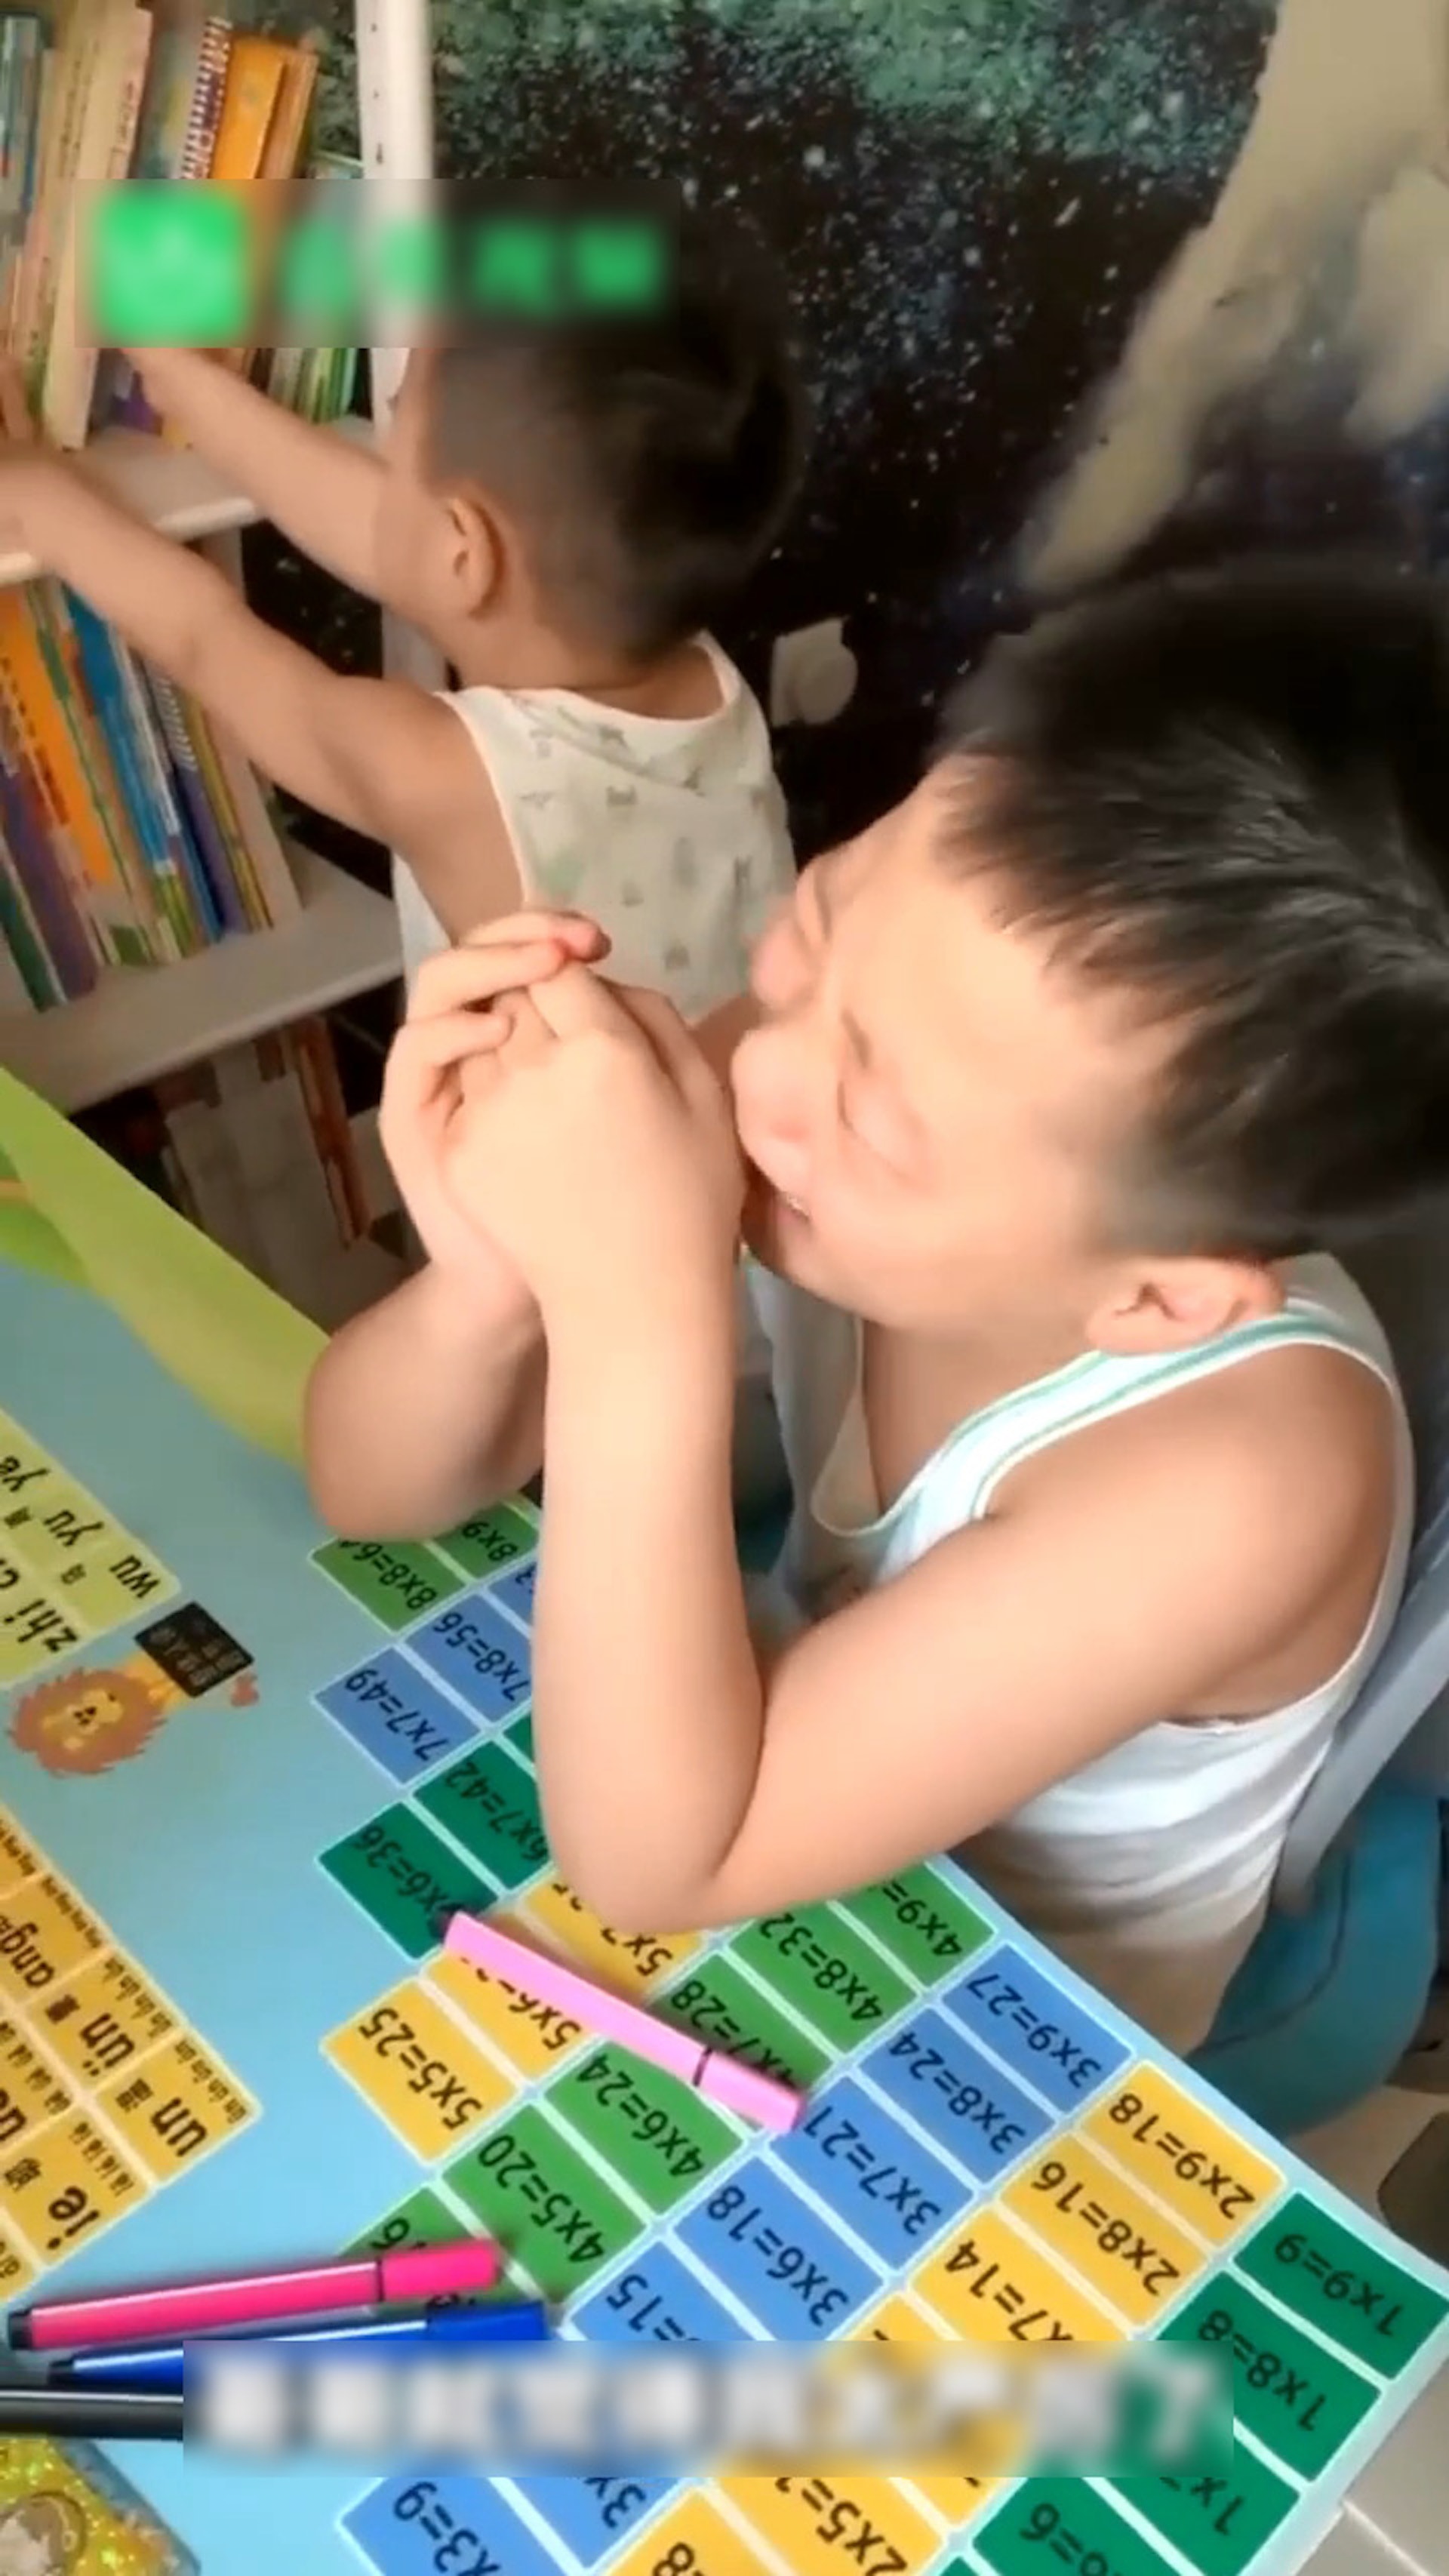 哥哥失聲痛哭，弟弟玩弄旁邊的書架。（微博影片截圖）